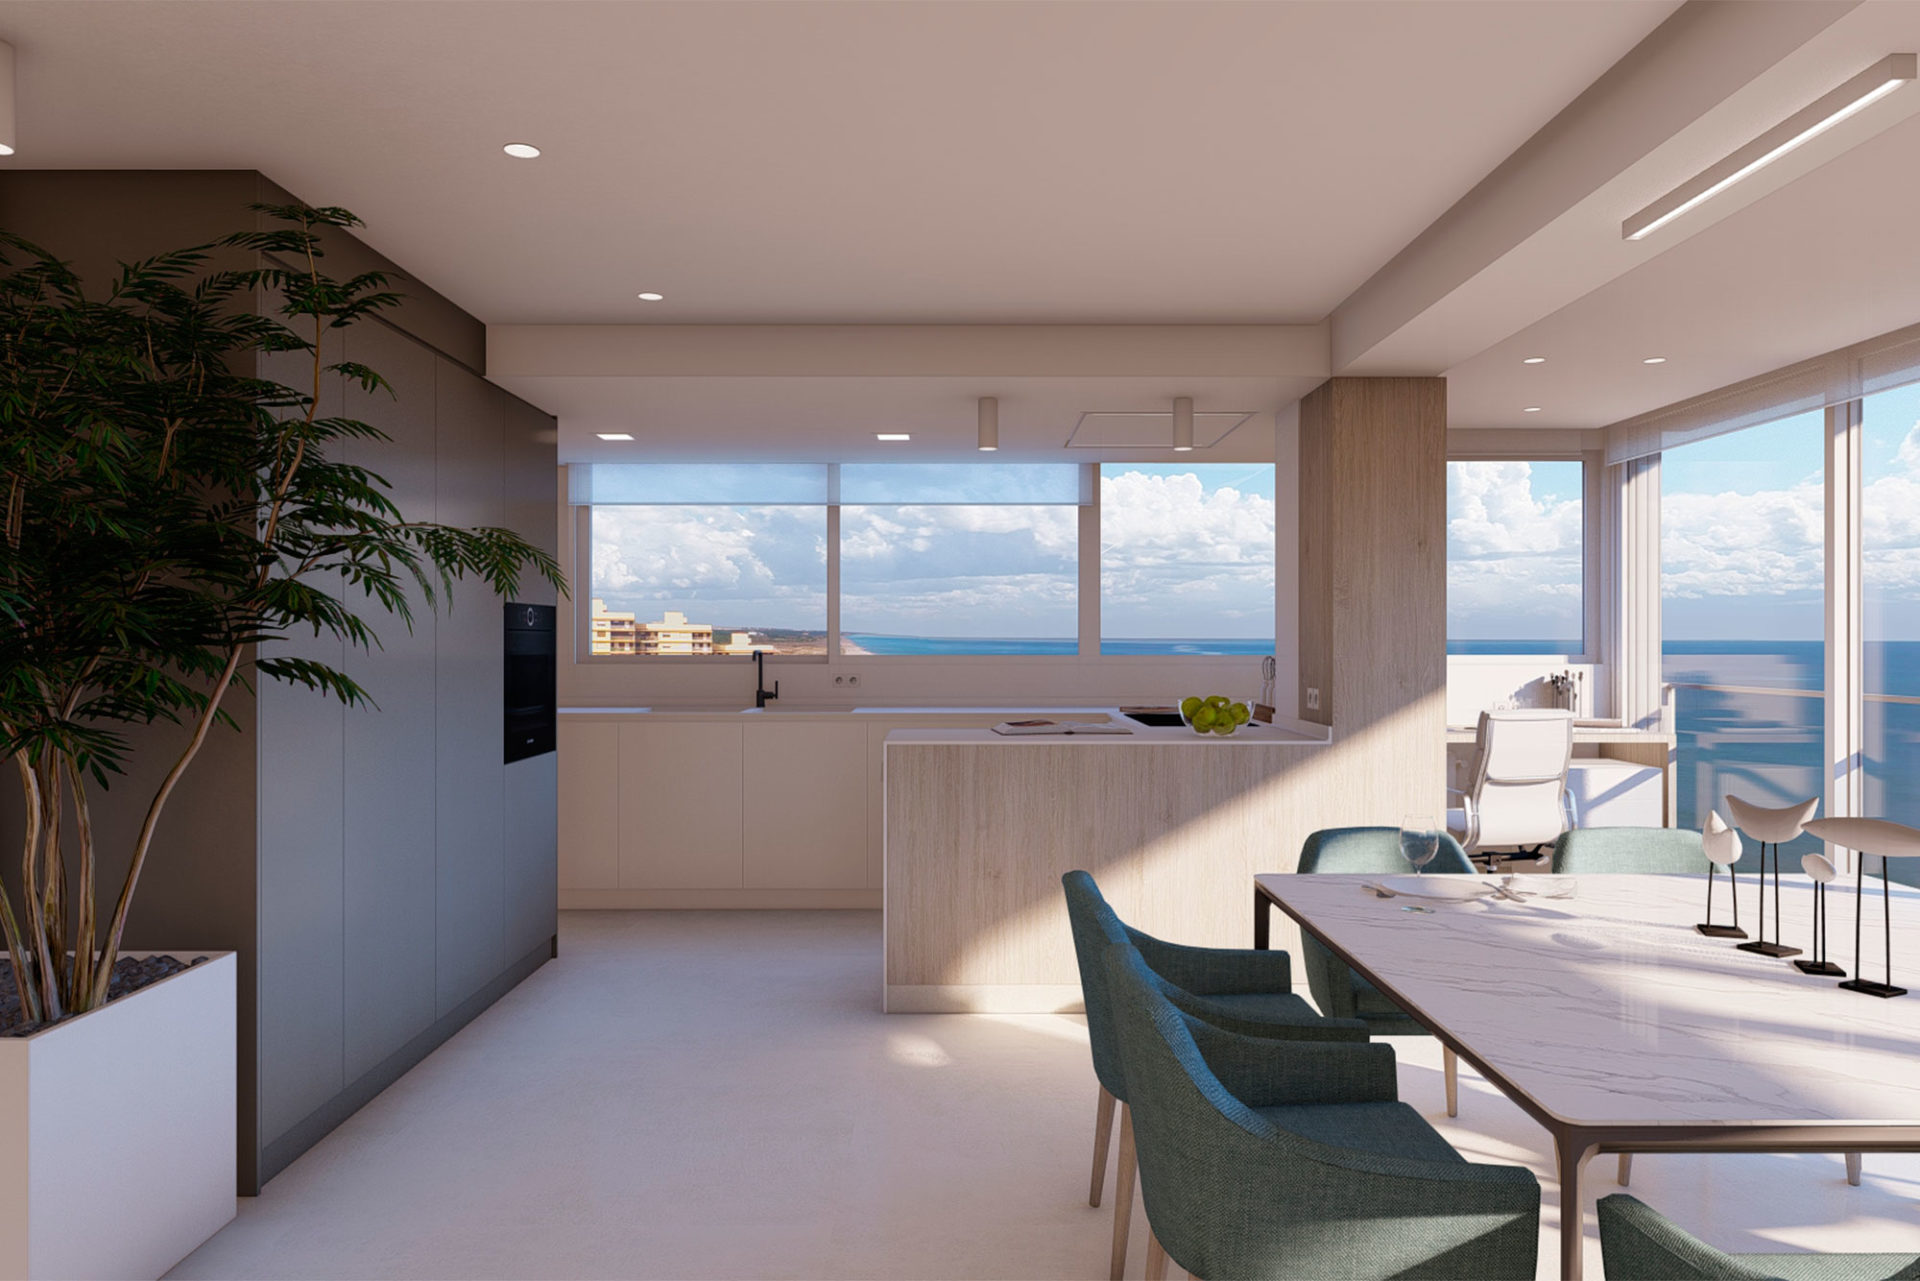 interiorismo apartamentos estilo mediterraneo cocina abierta comedor diseño personalizado y fabricación a medida por ebanistas